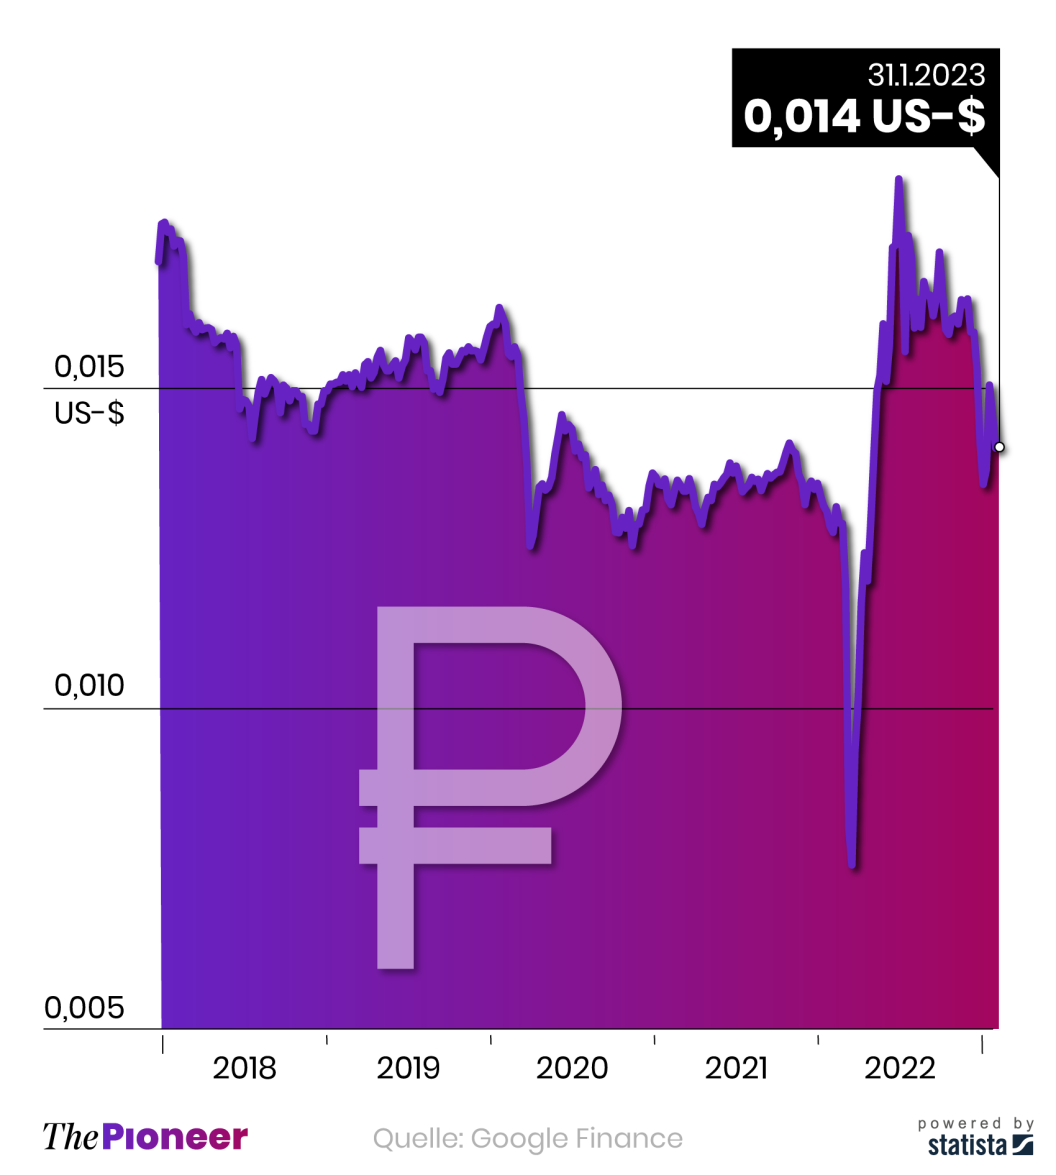 Wechselkurs gegenüber dem Dollar in den vergangenen fünf Jahren